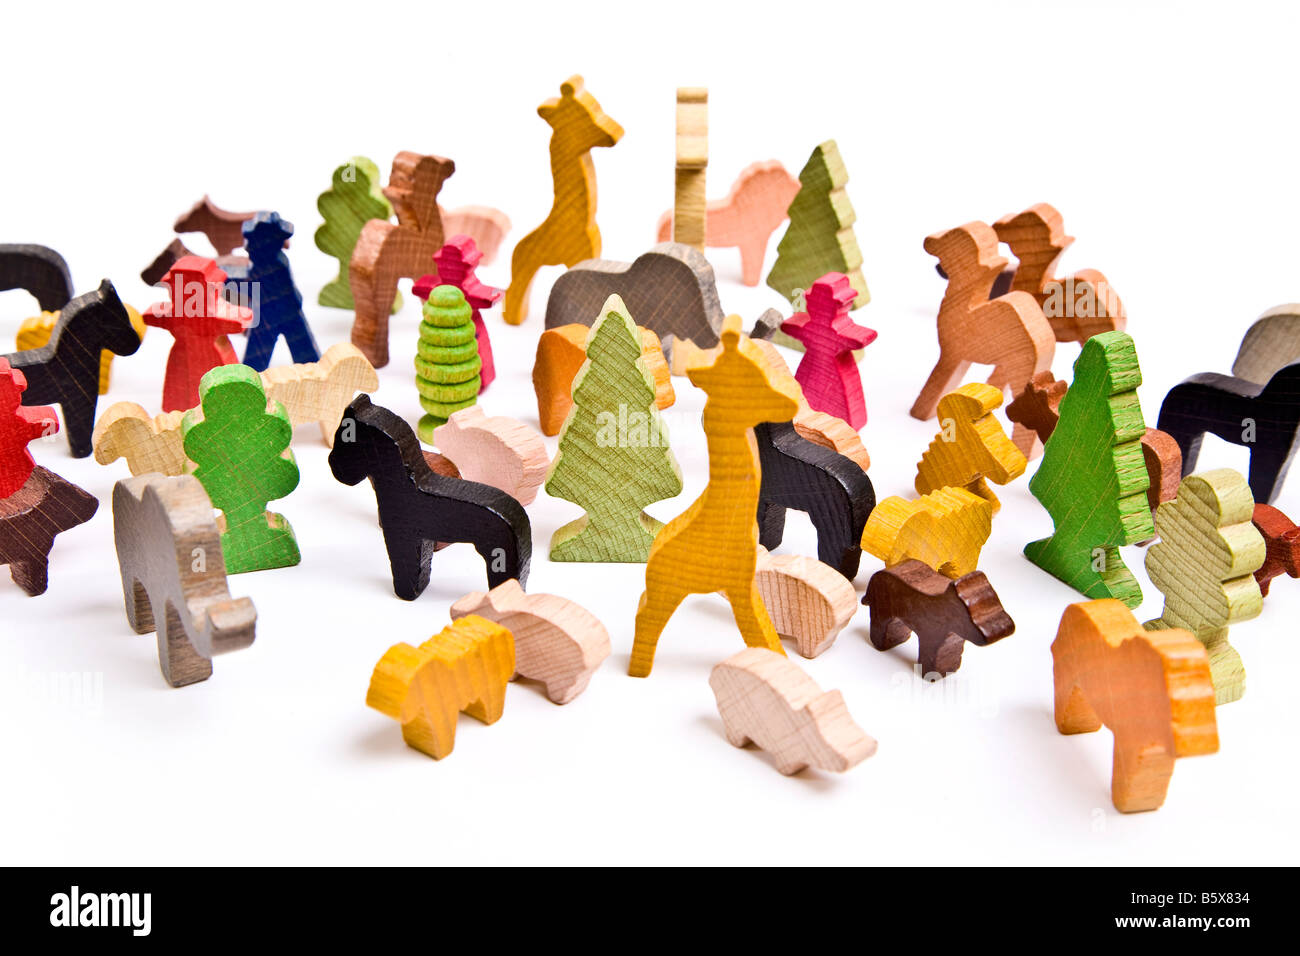 Farbiges Holz Kinder Spielzeug Tiere und Bäume auf einem weißen Hintergrund Stockfoto